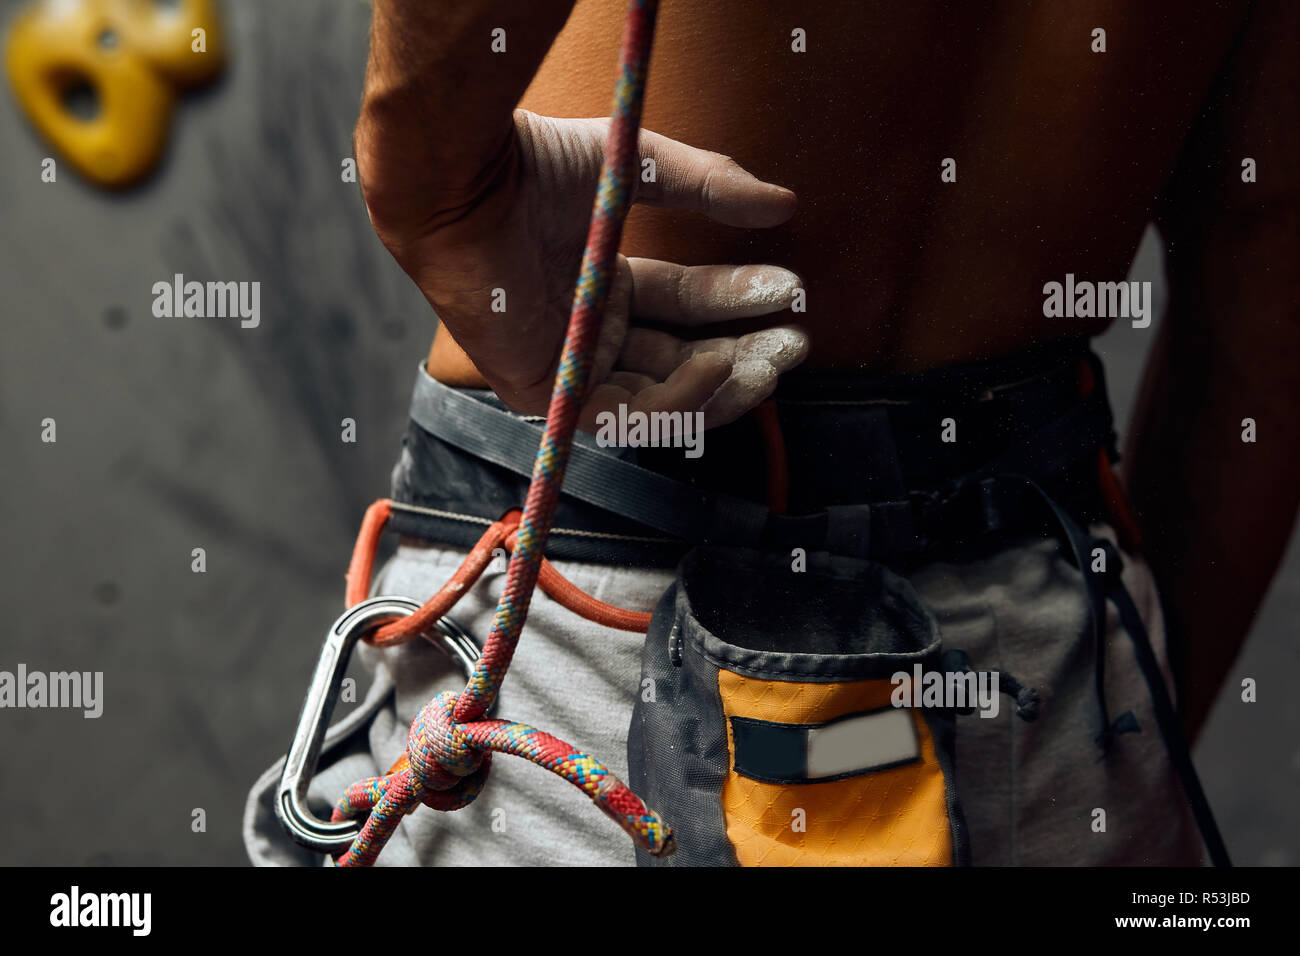 Climber s mâle mains avec de l'équipement lors de la préparation pour grimper, close-up. Banque D'Images